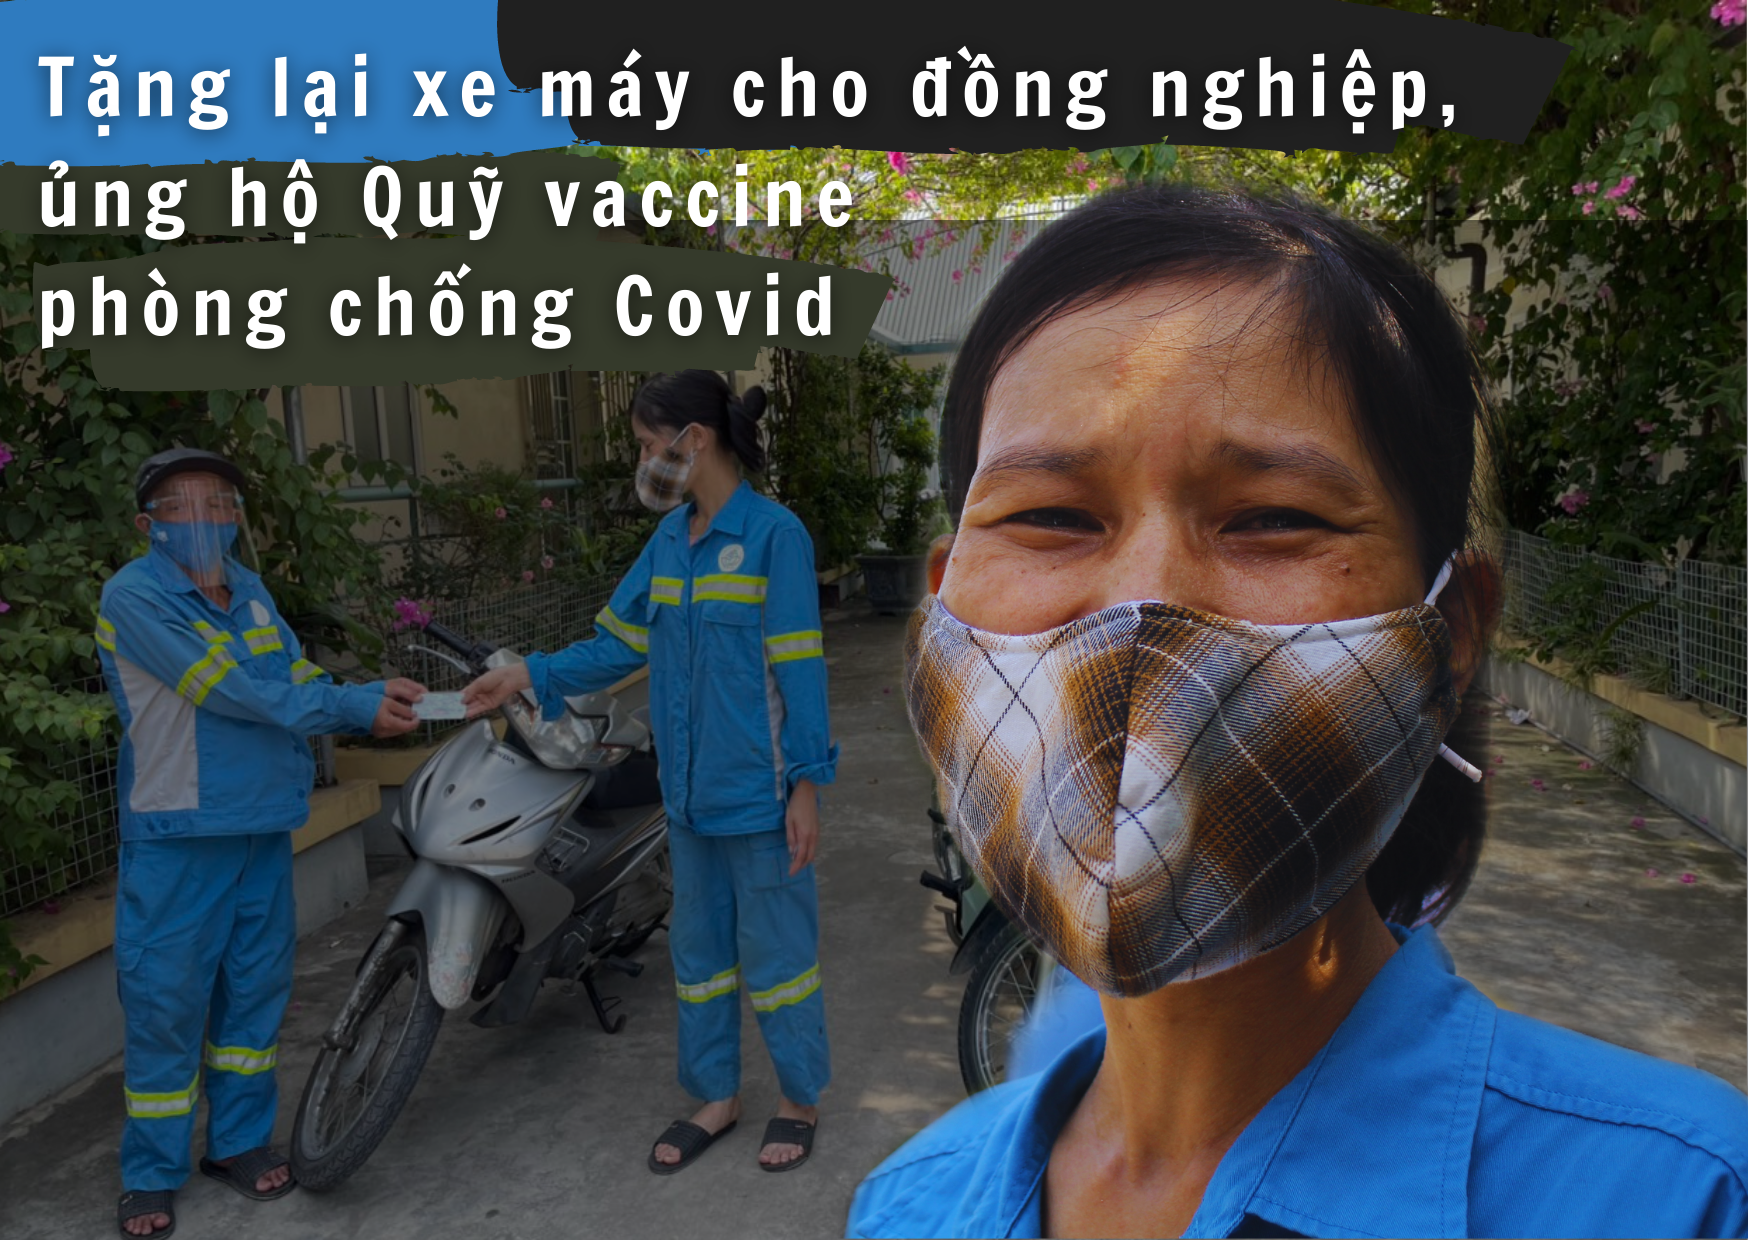 Gặp nữ công nhân vệ sinh môi trường bị cướp xe máy trong đêm